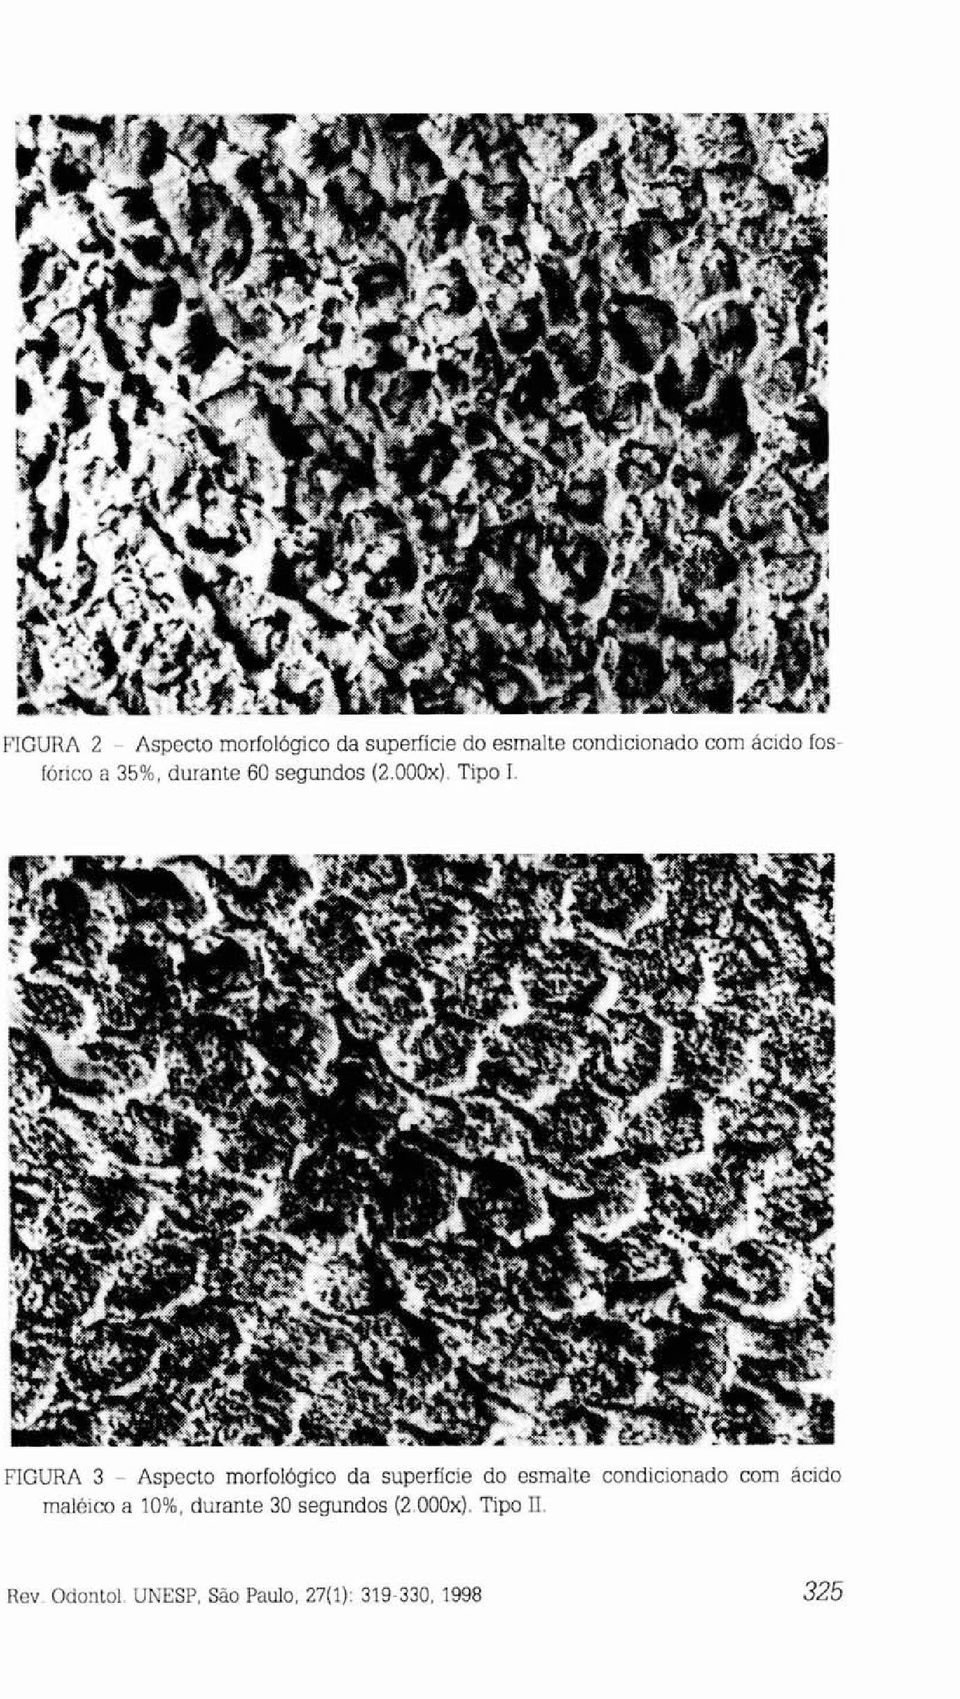 FIGURA 3 - Aspecto morfológico da superfície do esmalte condicionado com ácido